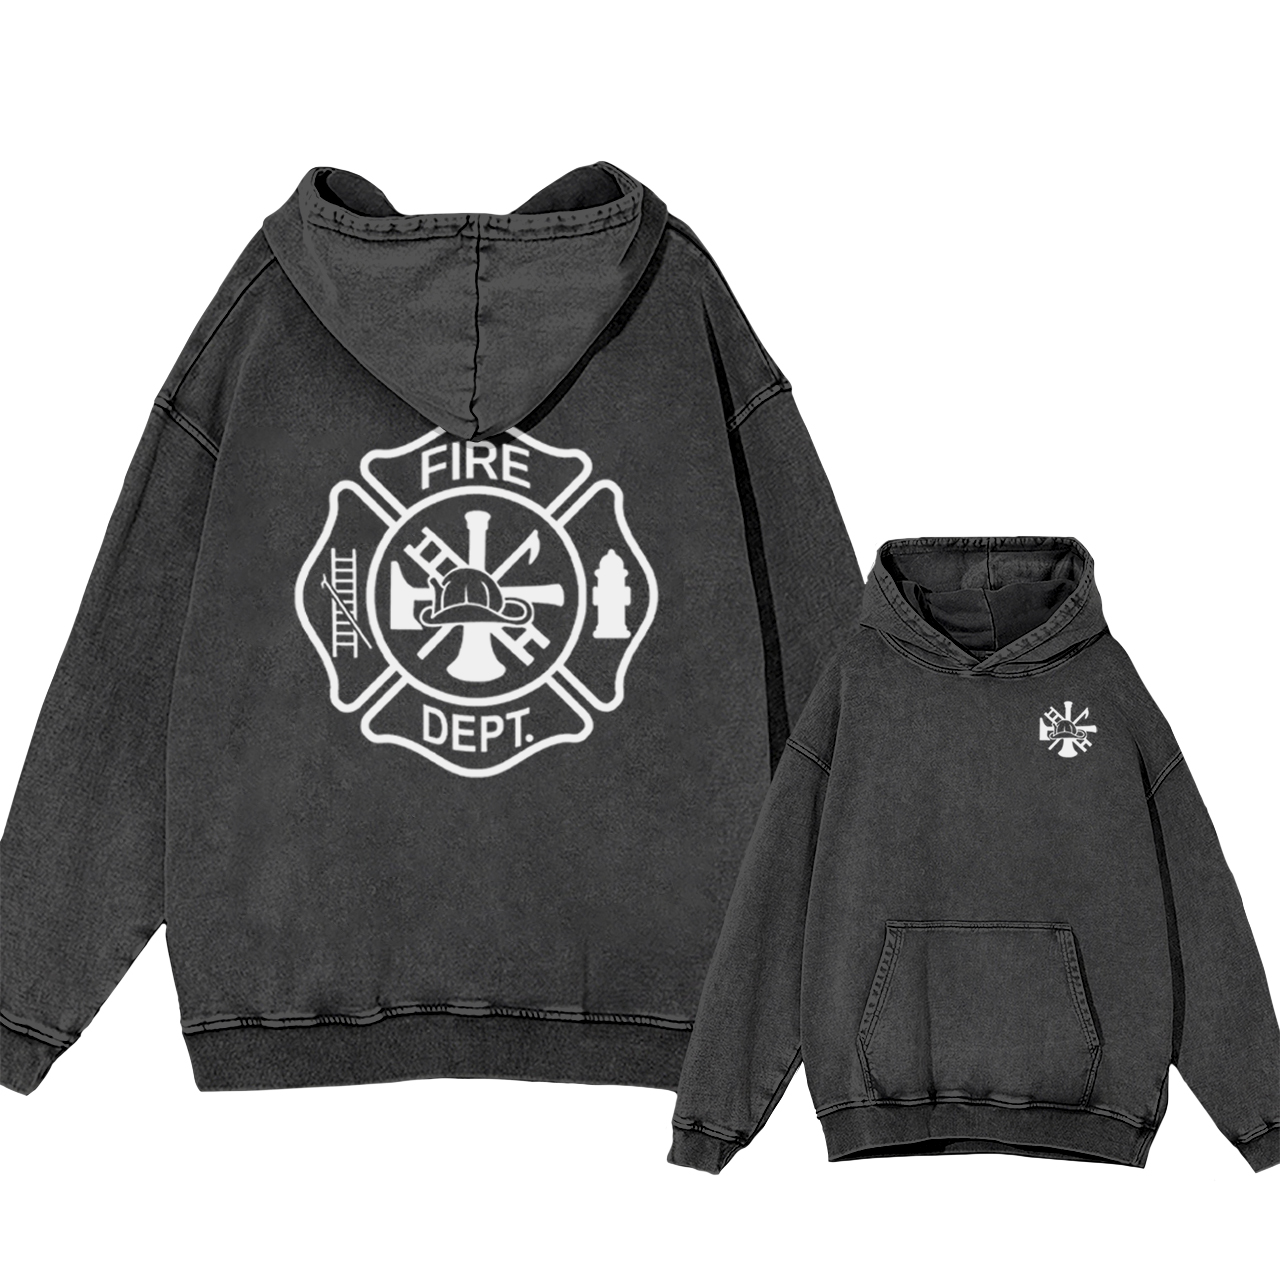 Fire Department Garment-Dye Hoodies